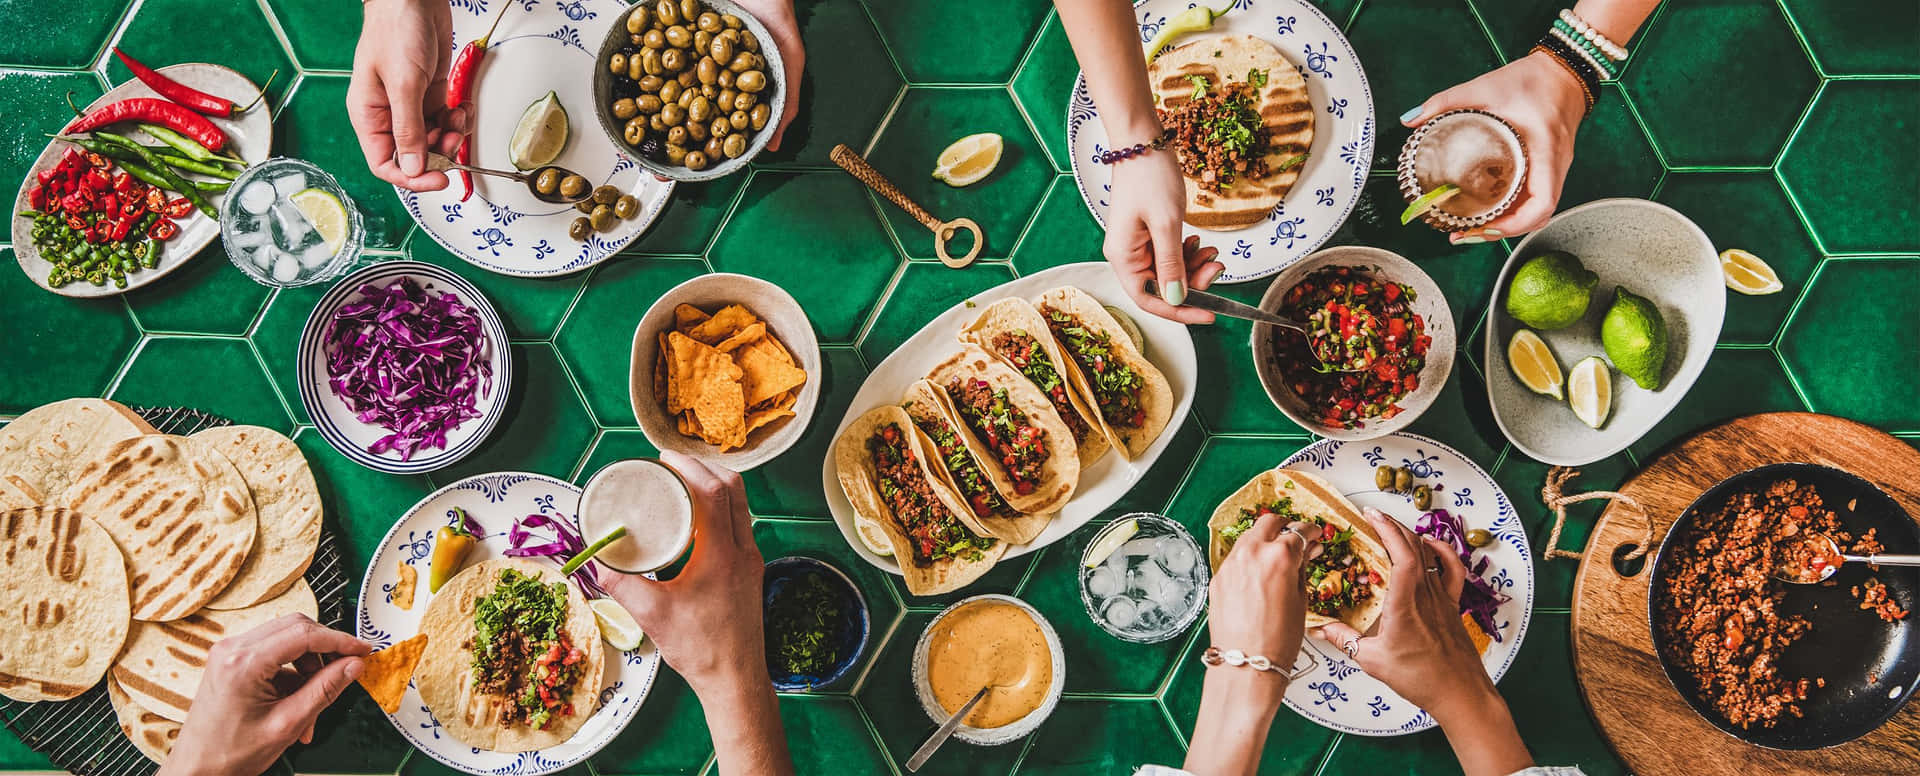 Ungrupo De Personas Comiendo Comida En Una Mesa Con Azulejos Verdes.